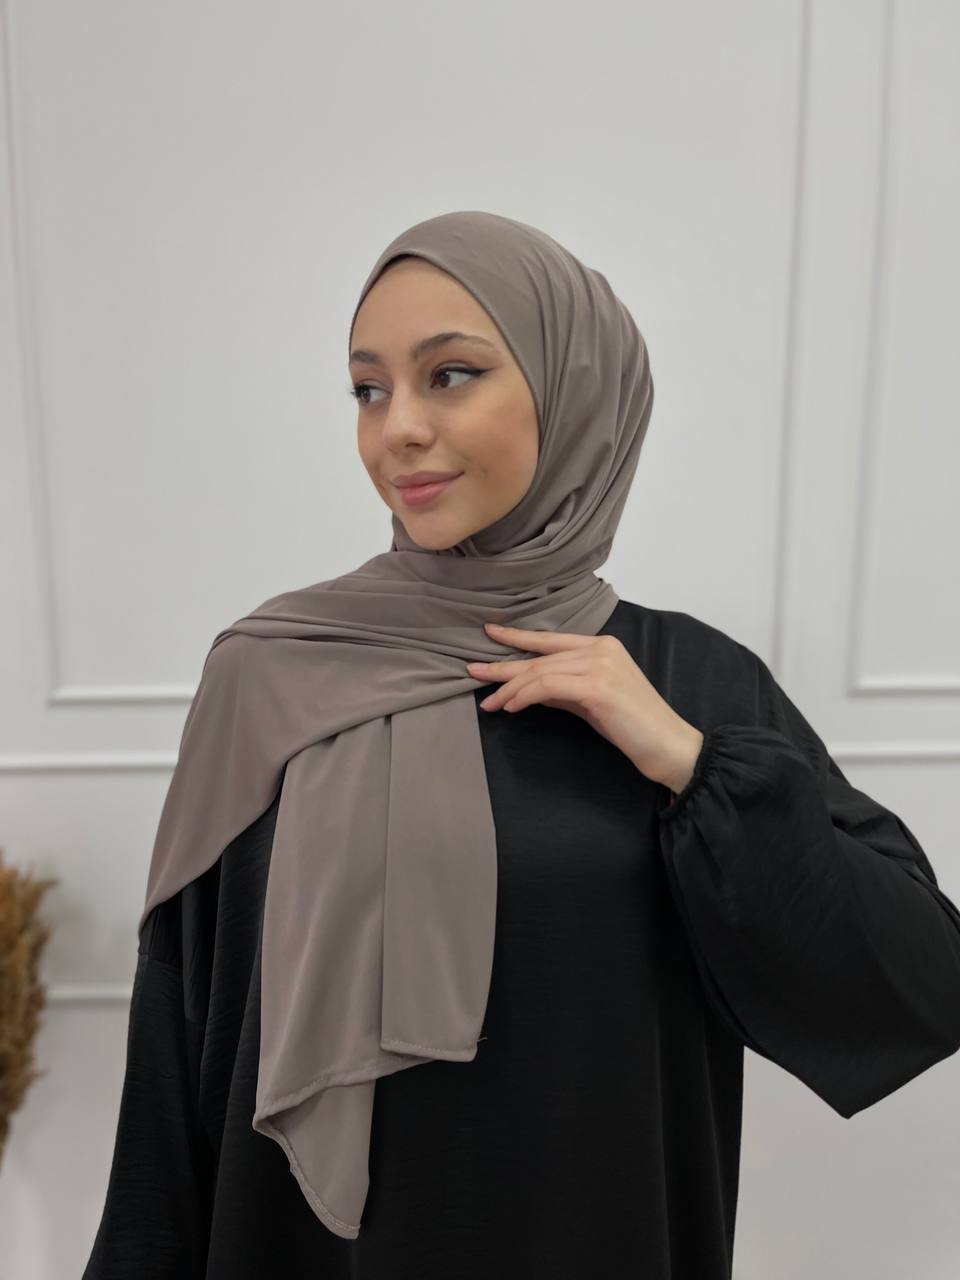 Frau in elegantem Hijab demonstriert Selbstbewusstsein und Identität, passend zum Blog-Artikel 'Der Hijab: Mehr als nur ein Kleidungsstück